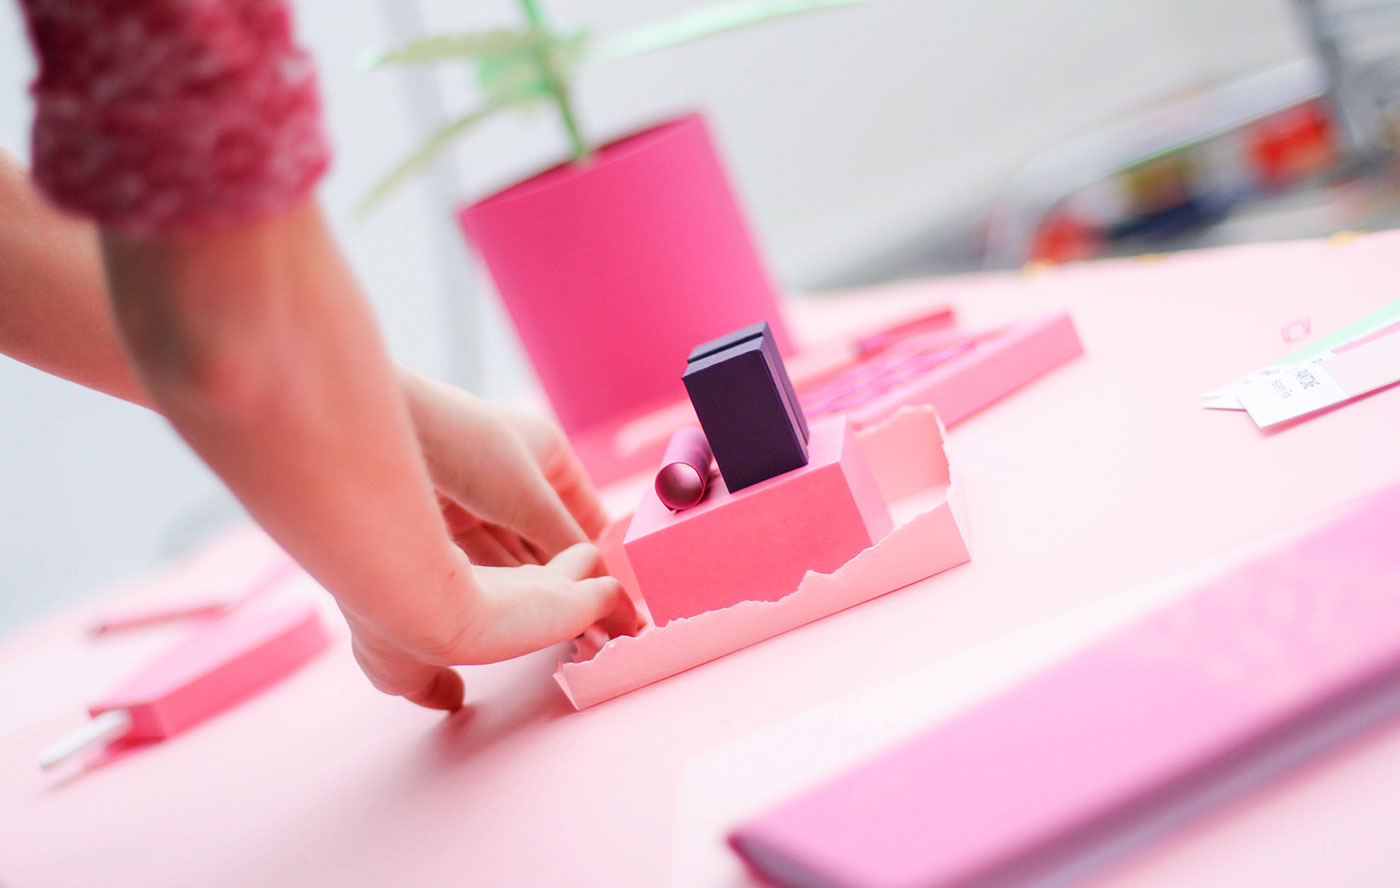 SNASK papercraft stop motion craft handcrafted pink paper stop motion Stockholm grid cutting knife desk dragonframe